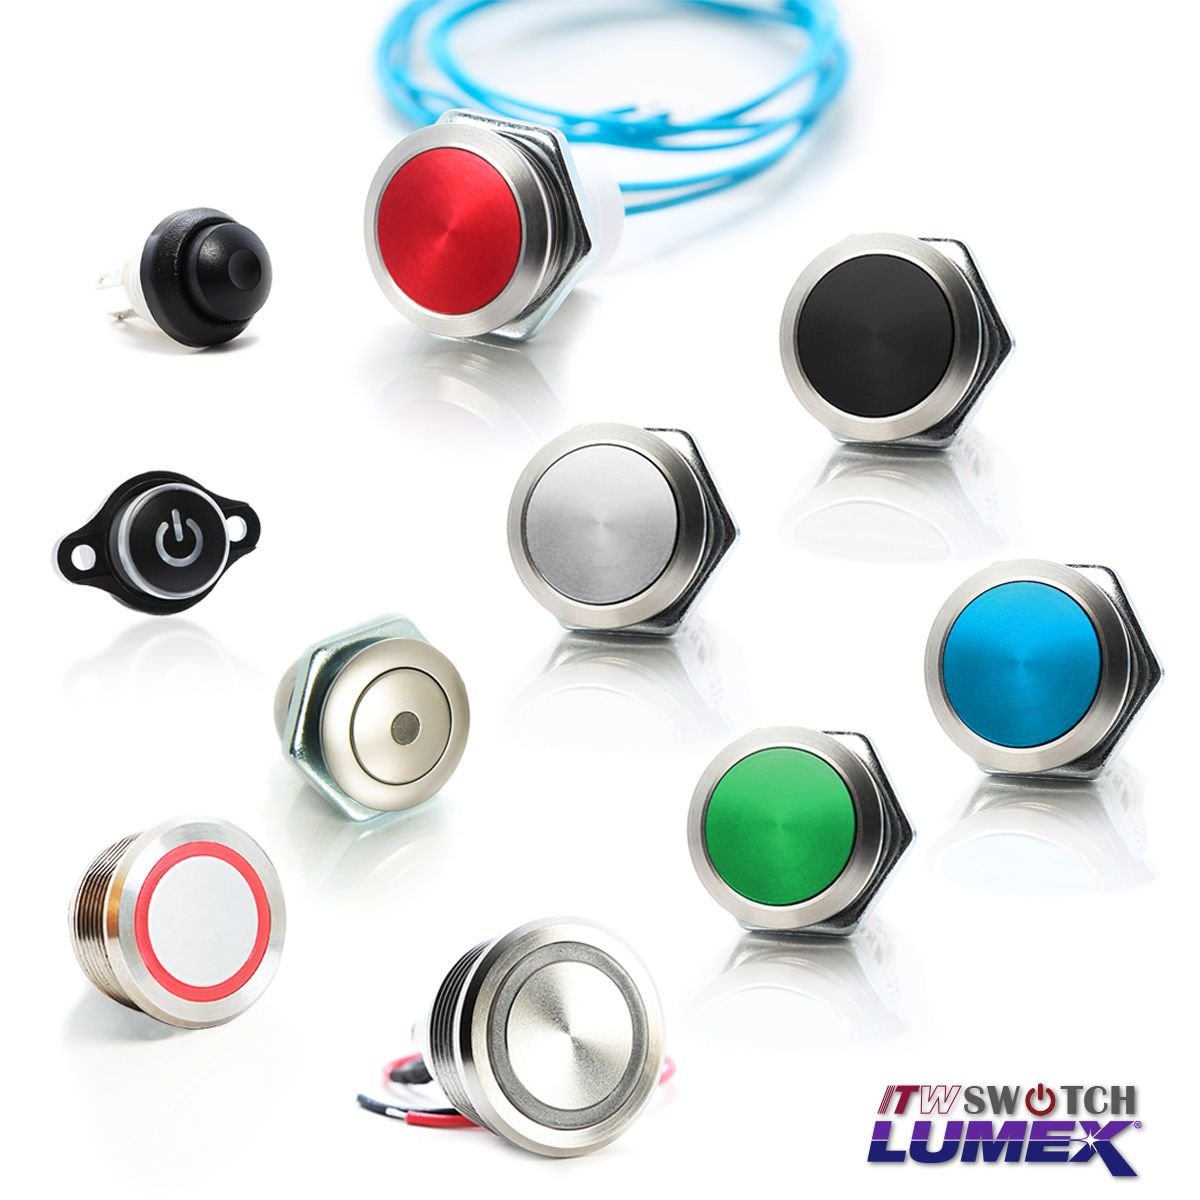 ITW Lumex Switchoferă o gamă de întrerupătoare cu buton.